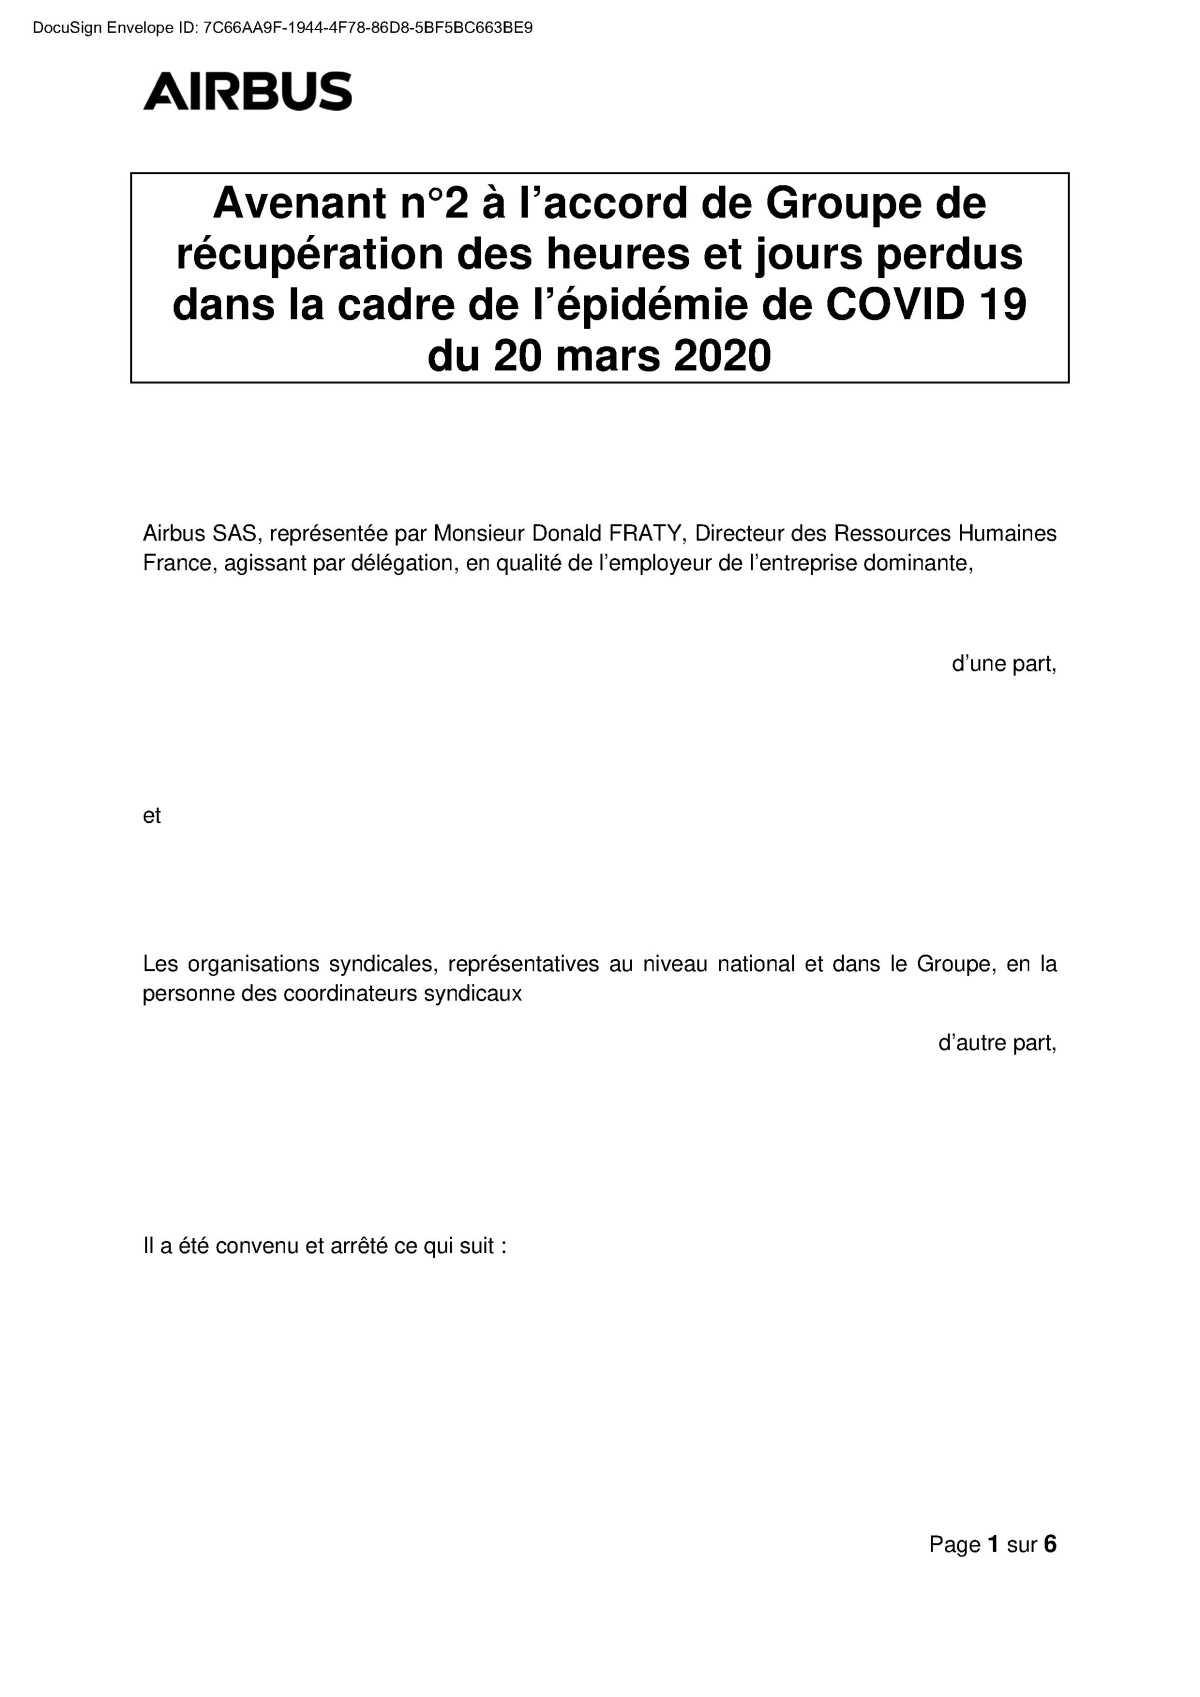 Covid-19 : avenant n°2 à l'accord de récupération